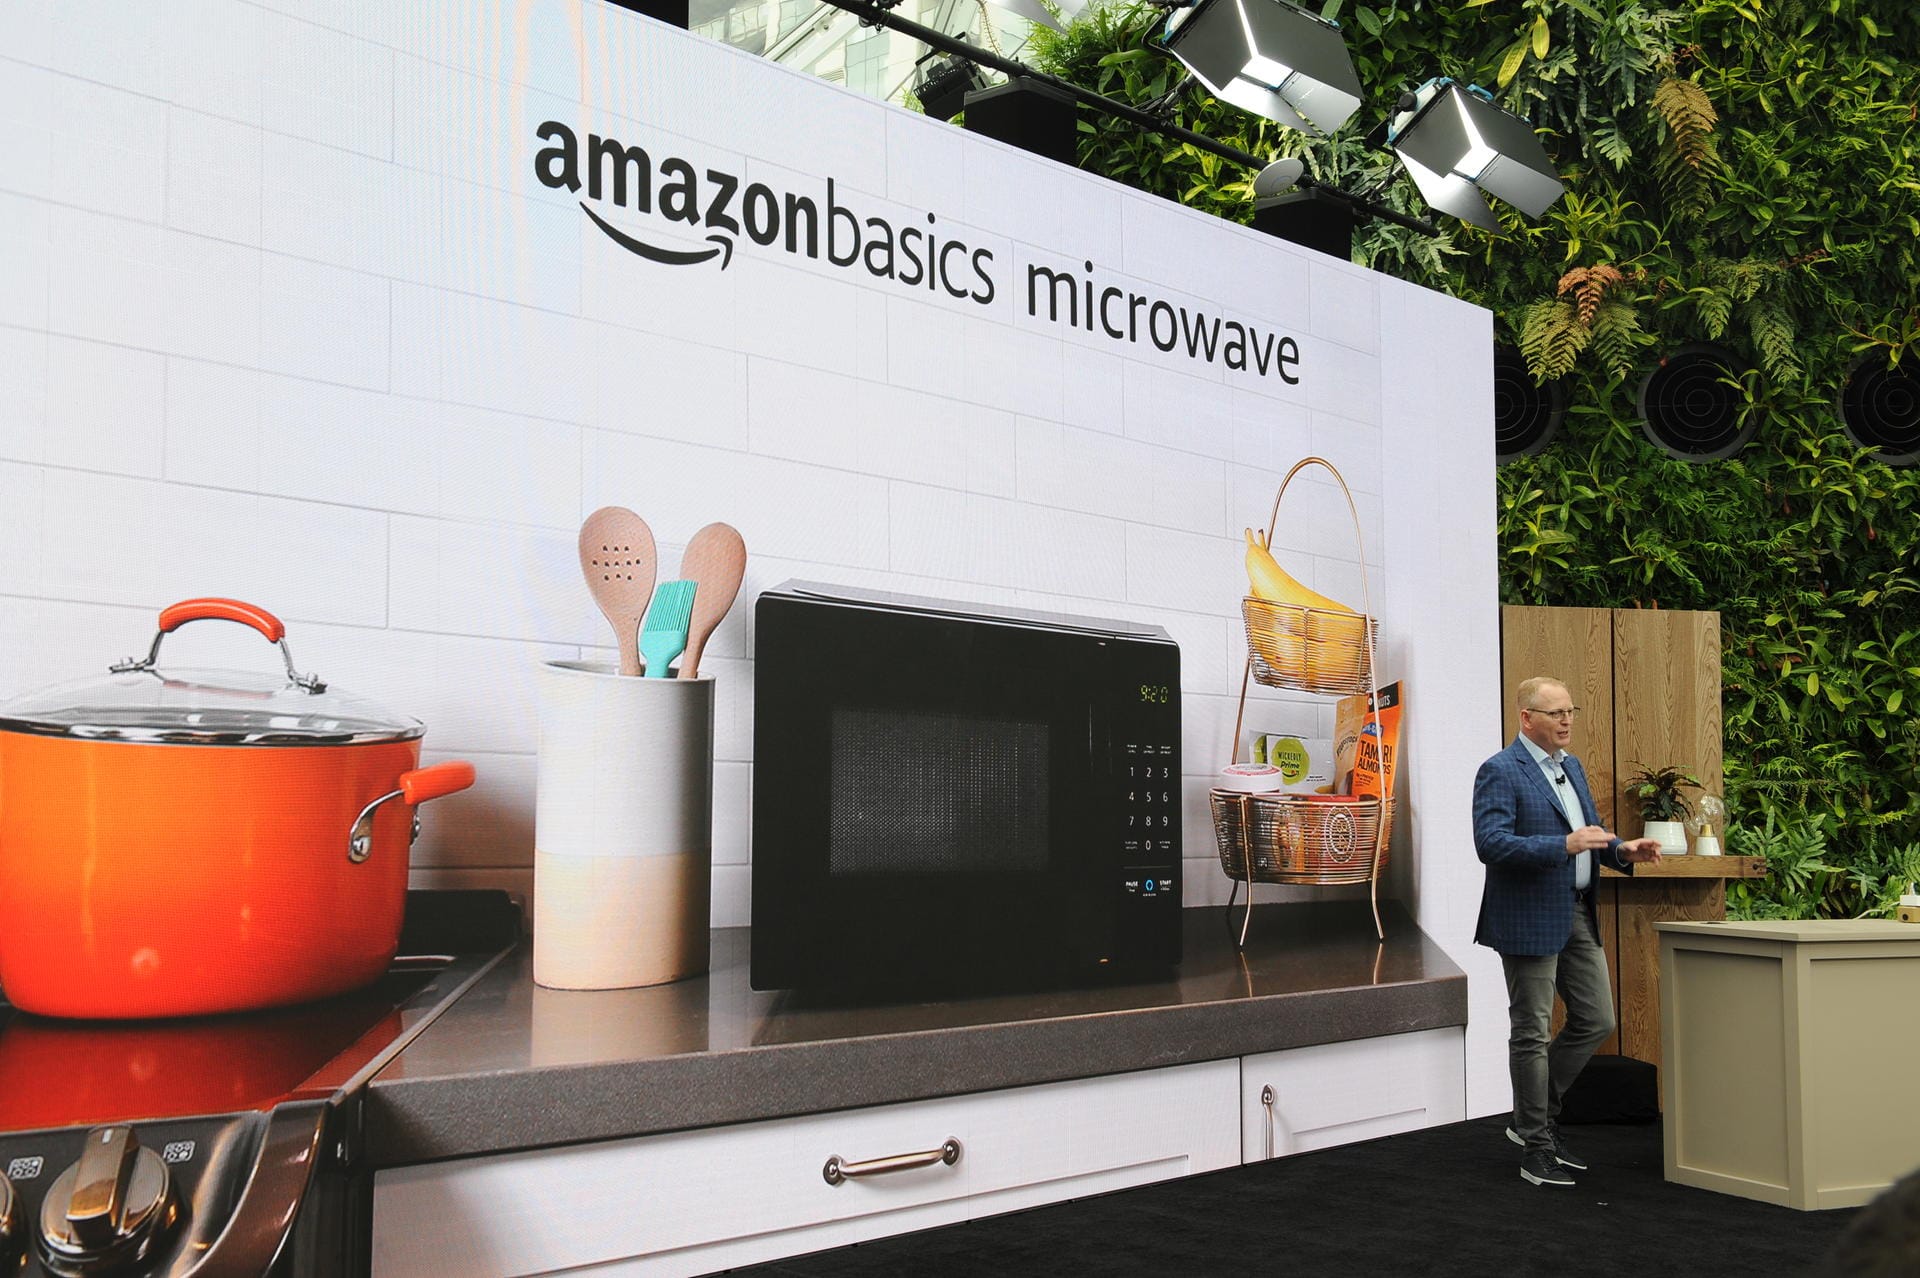 Amazon stellt neue Alexa-Technik vor